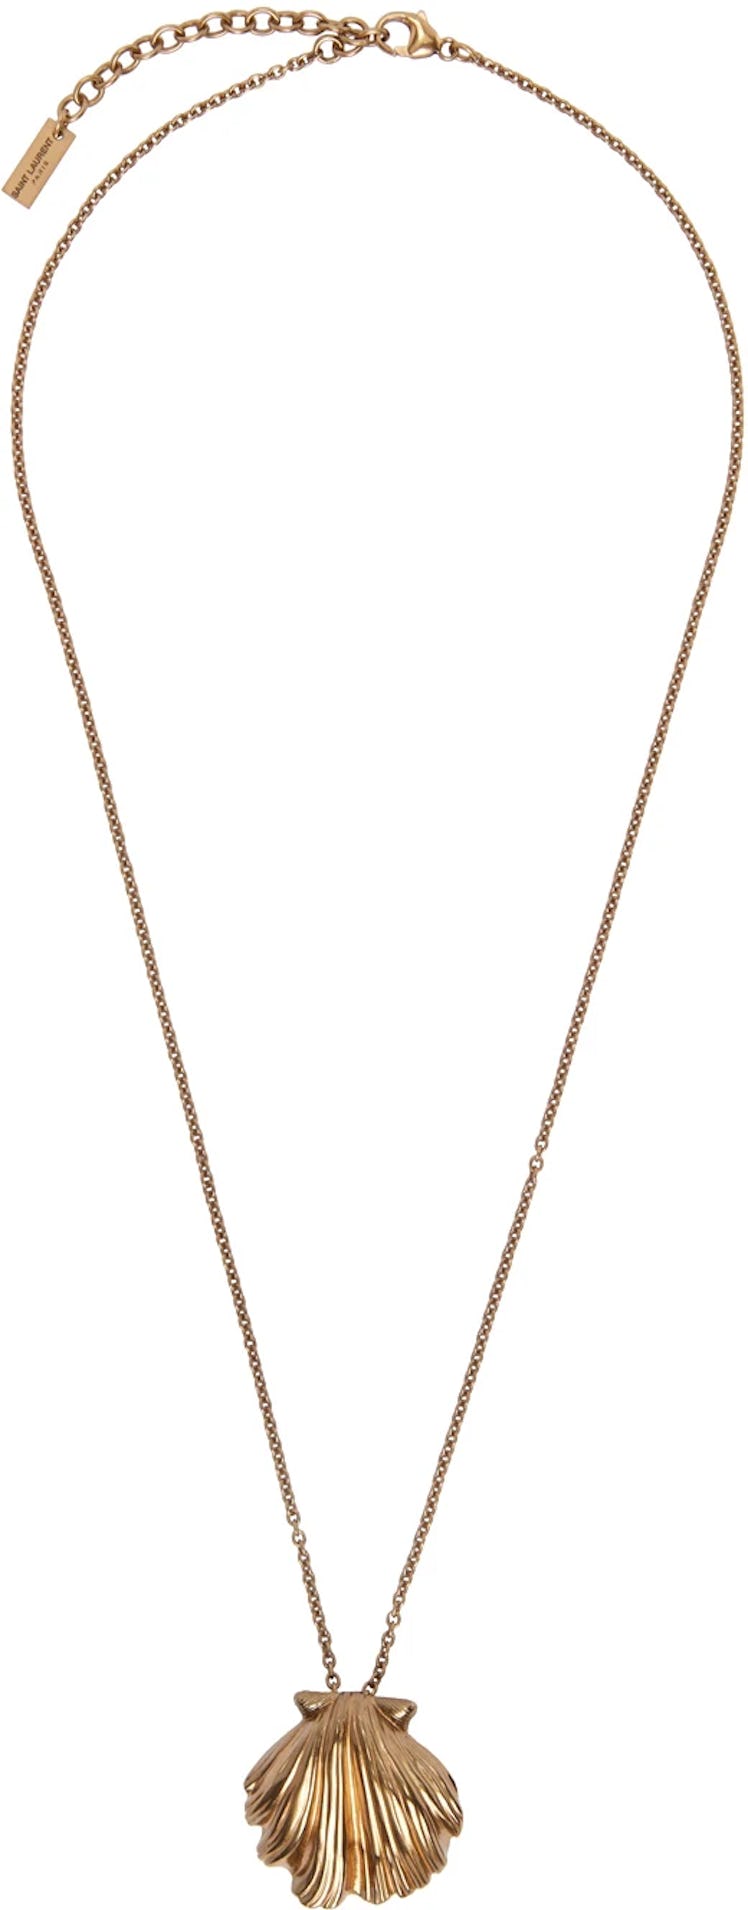 Saint Laurent's Gold Seashell Pendant Necklace. 